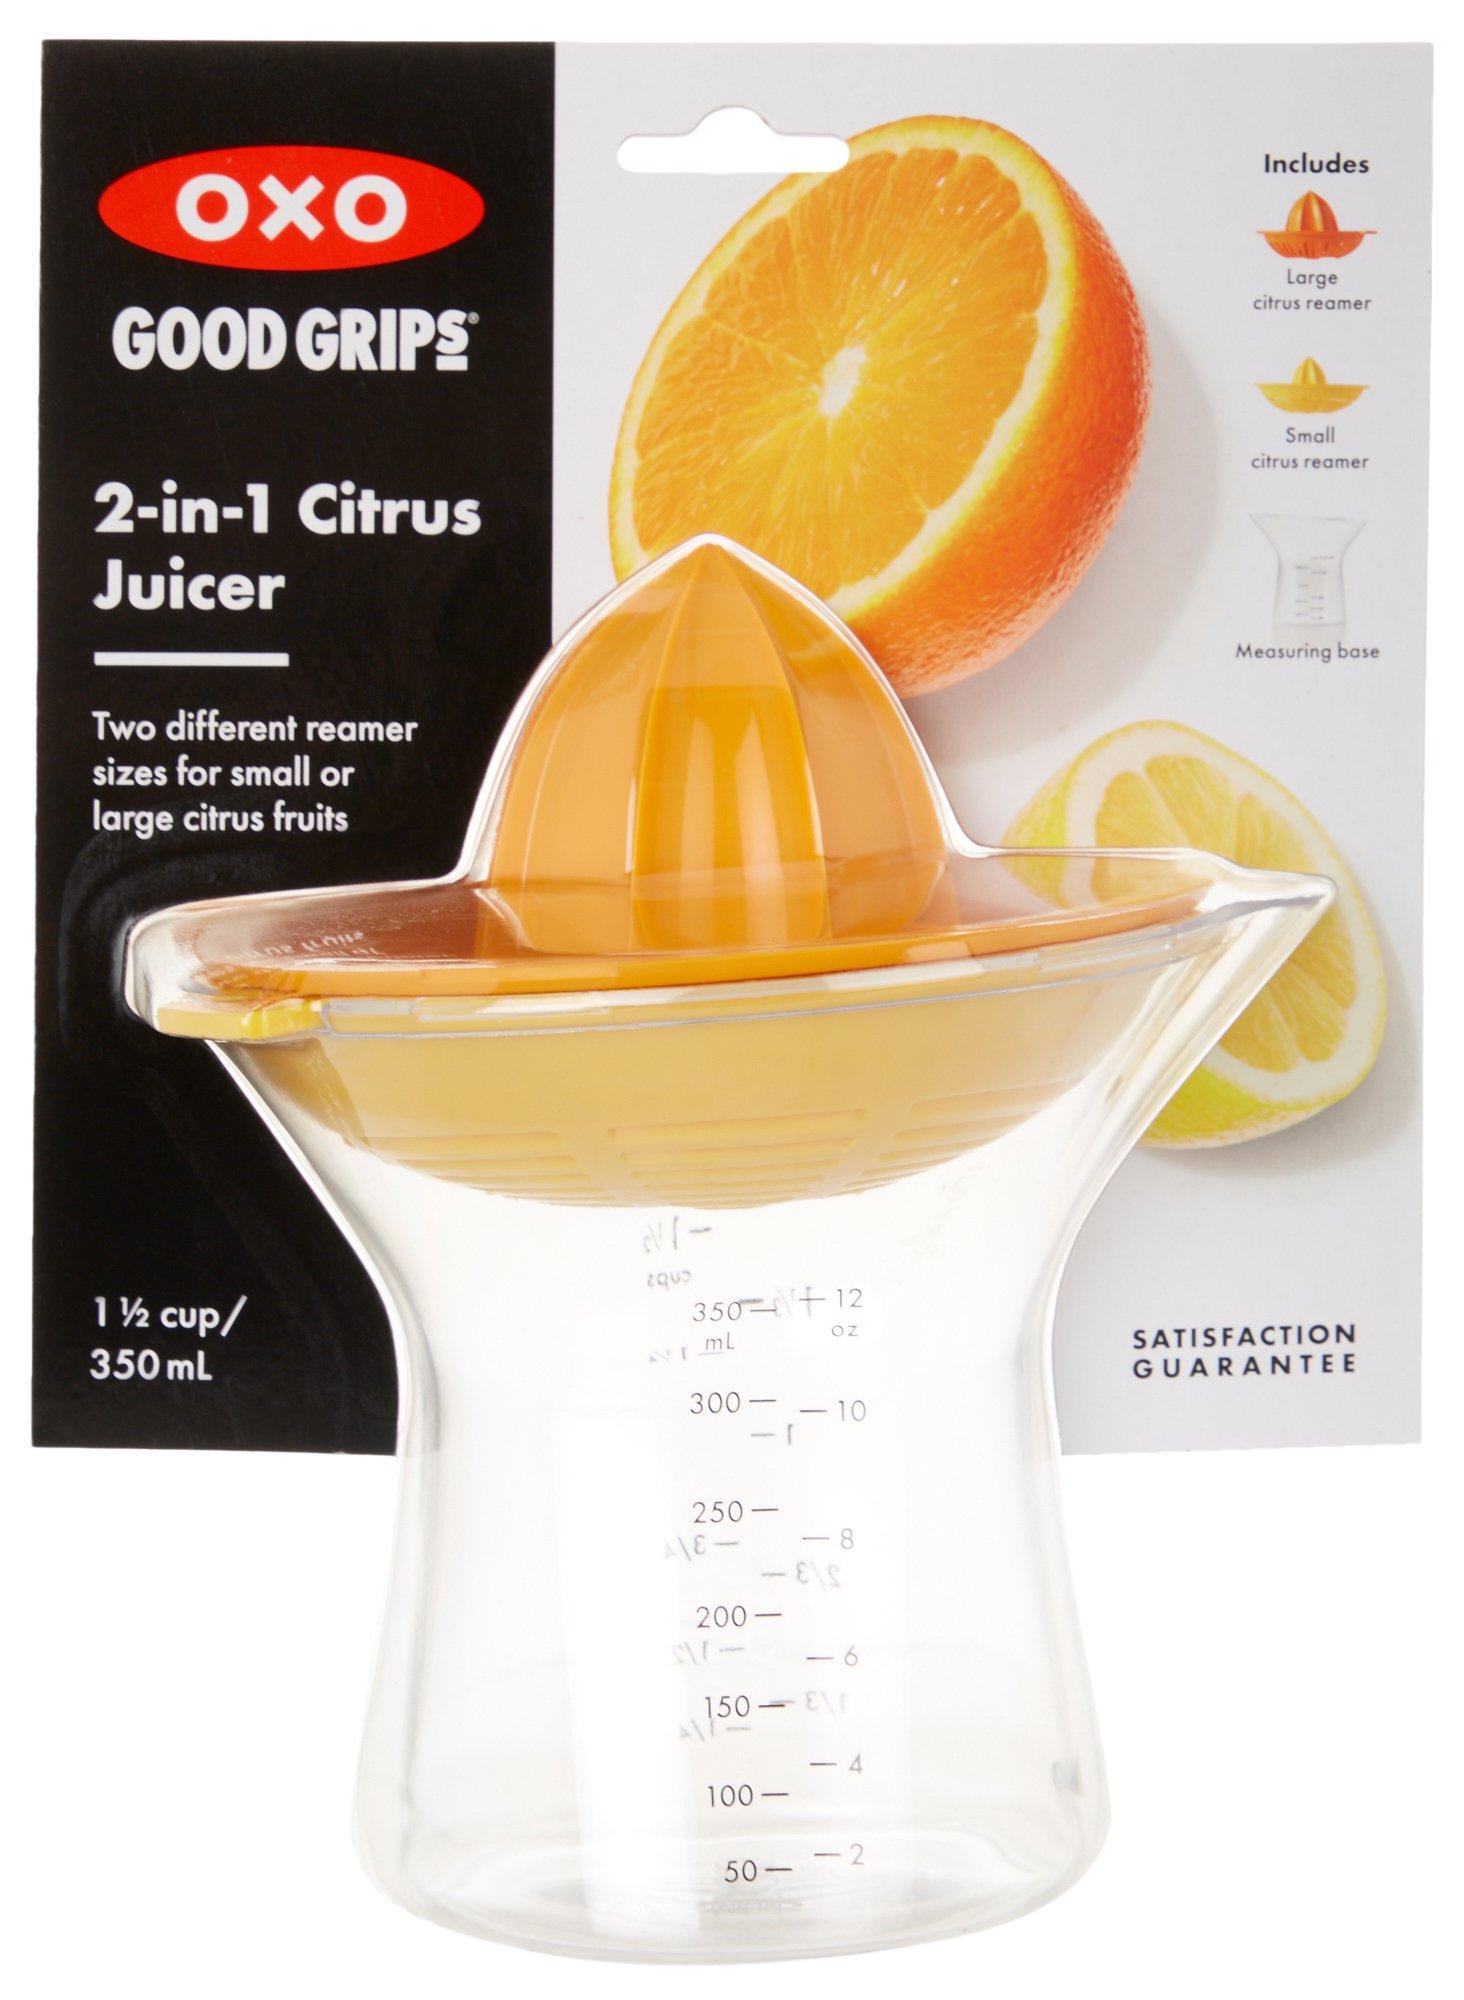 Good Grips 2-in-1 Citrus Juicer